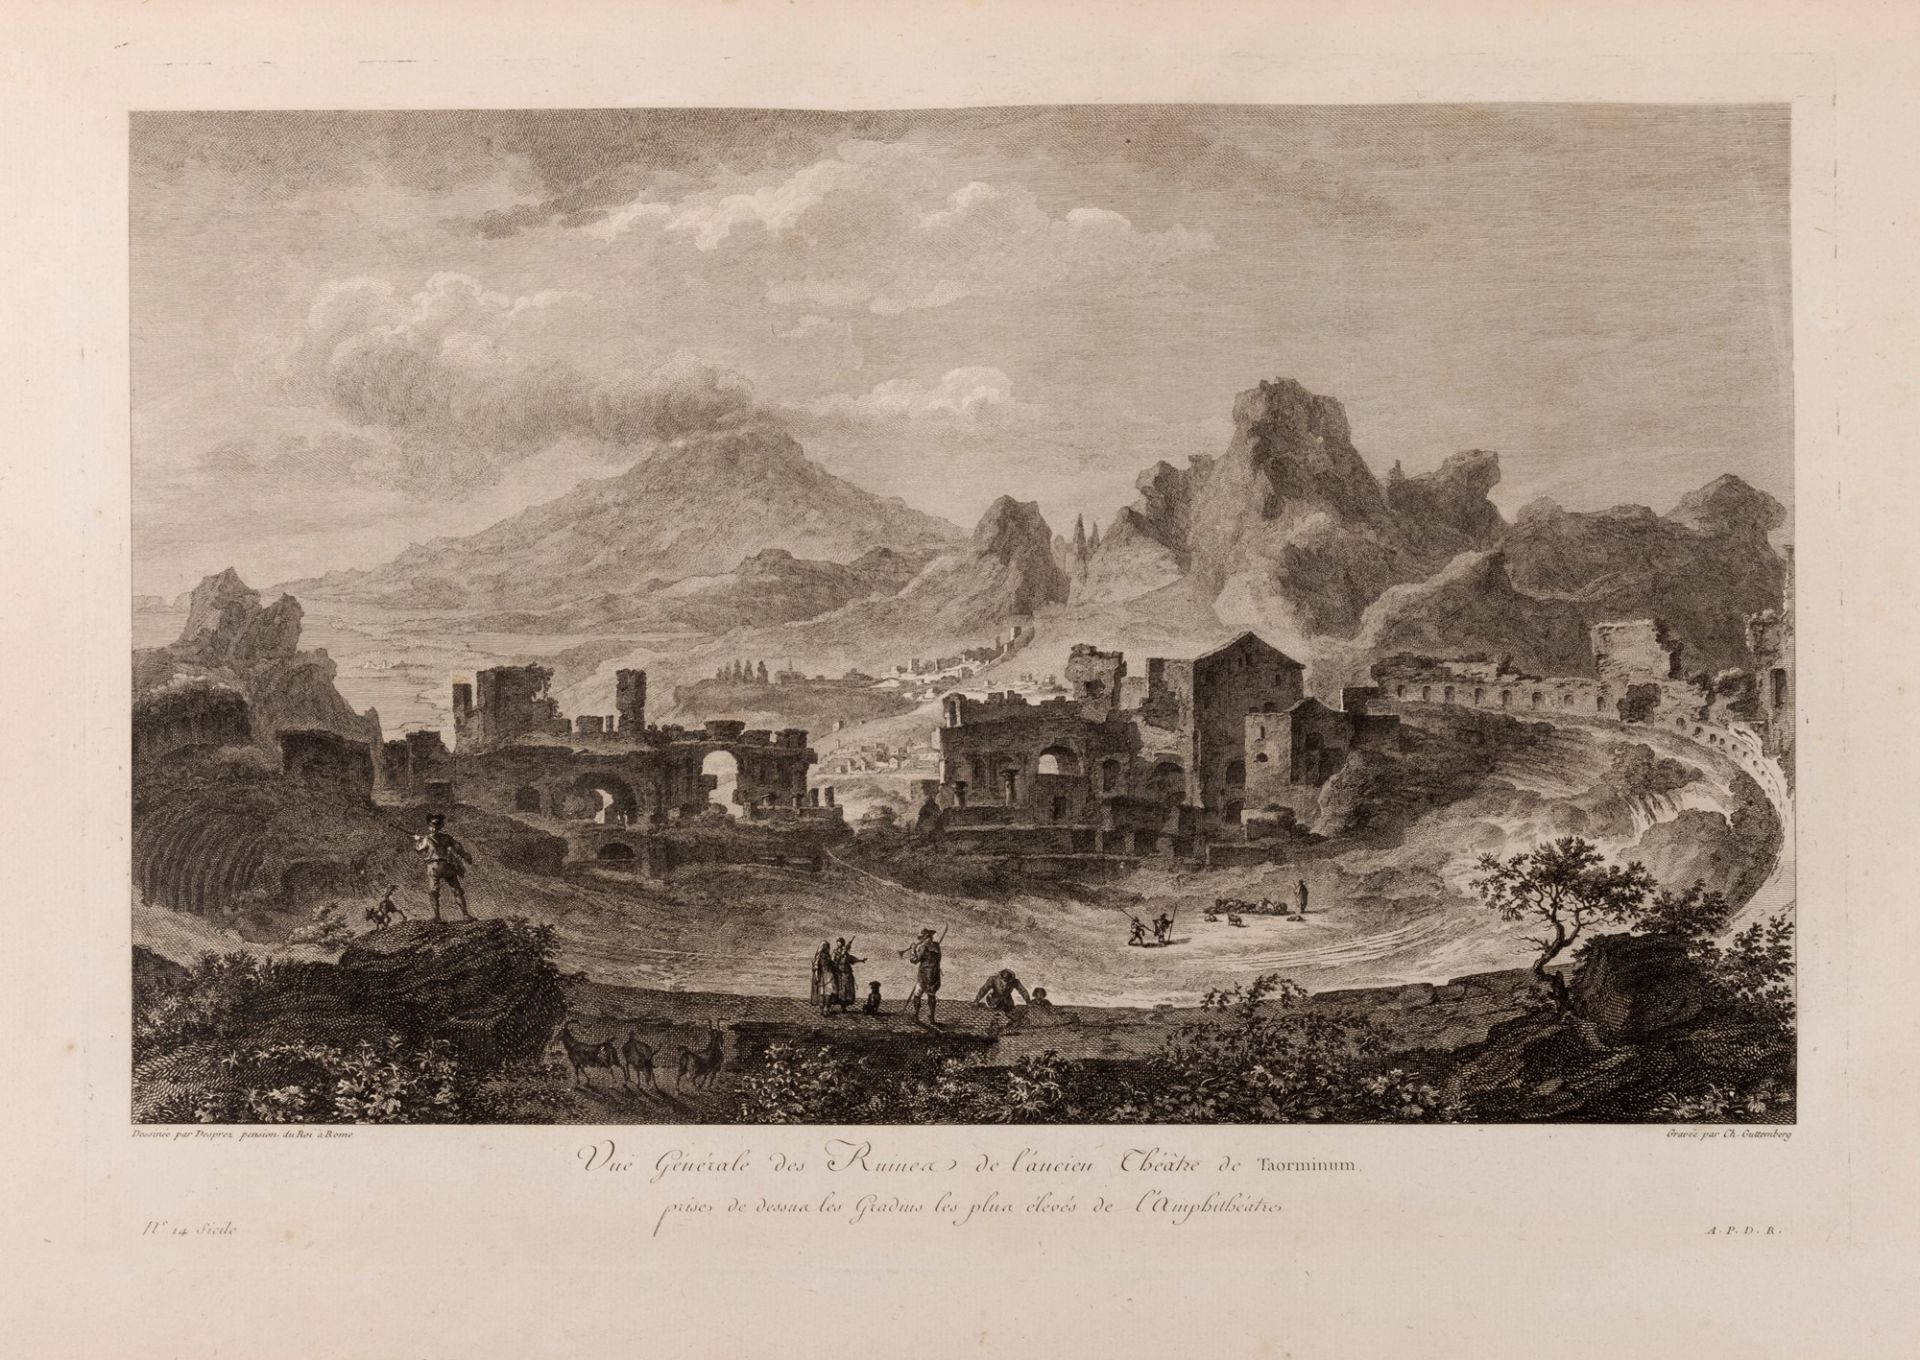 Naples - Sicily - Illustrated - Saint - Non, Jean Claude Richard - Voyage Pittoresque de Naples et S - Image 2 of 3